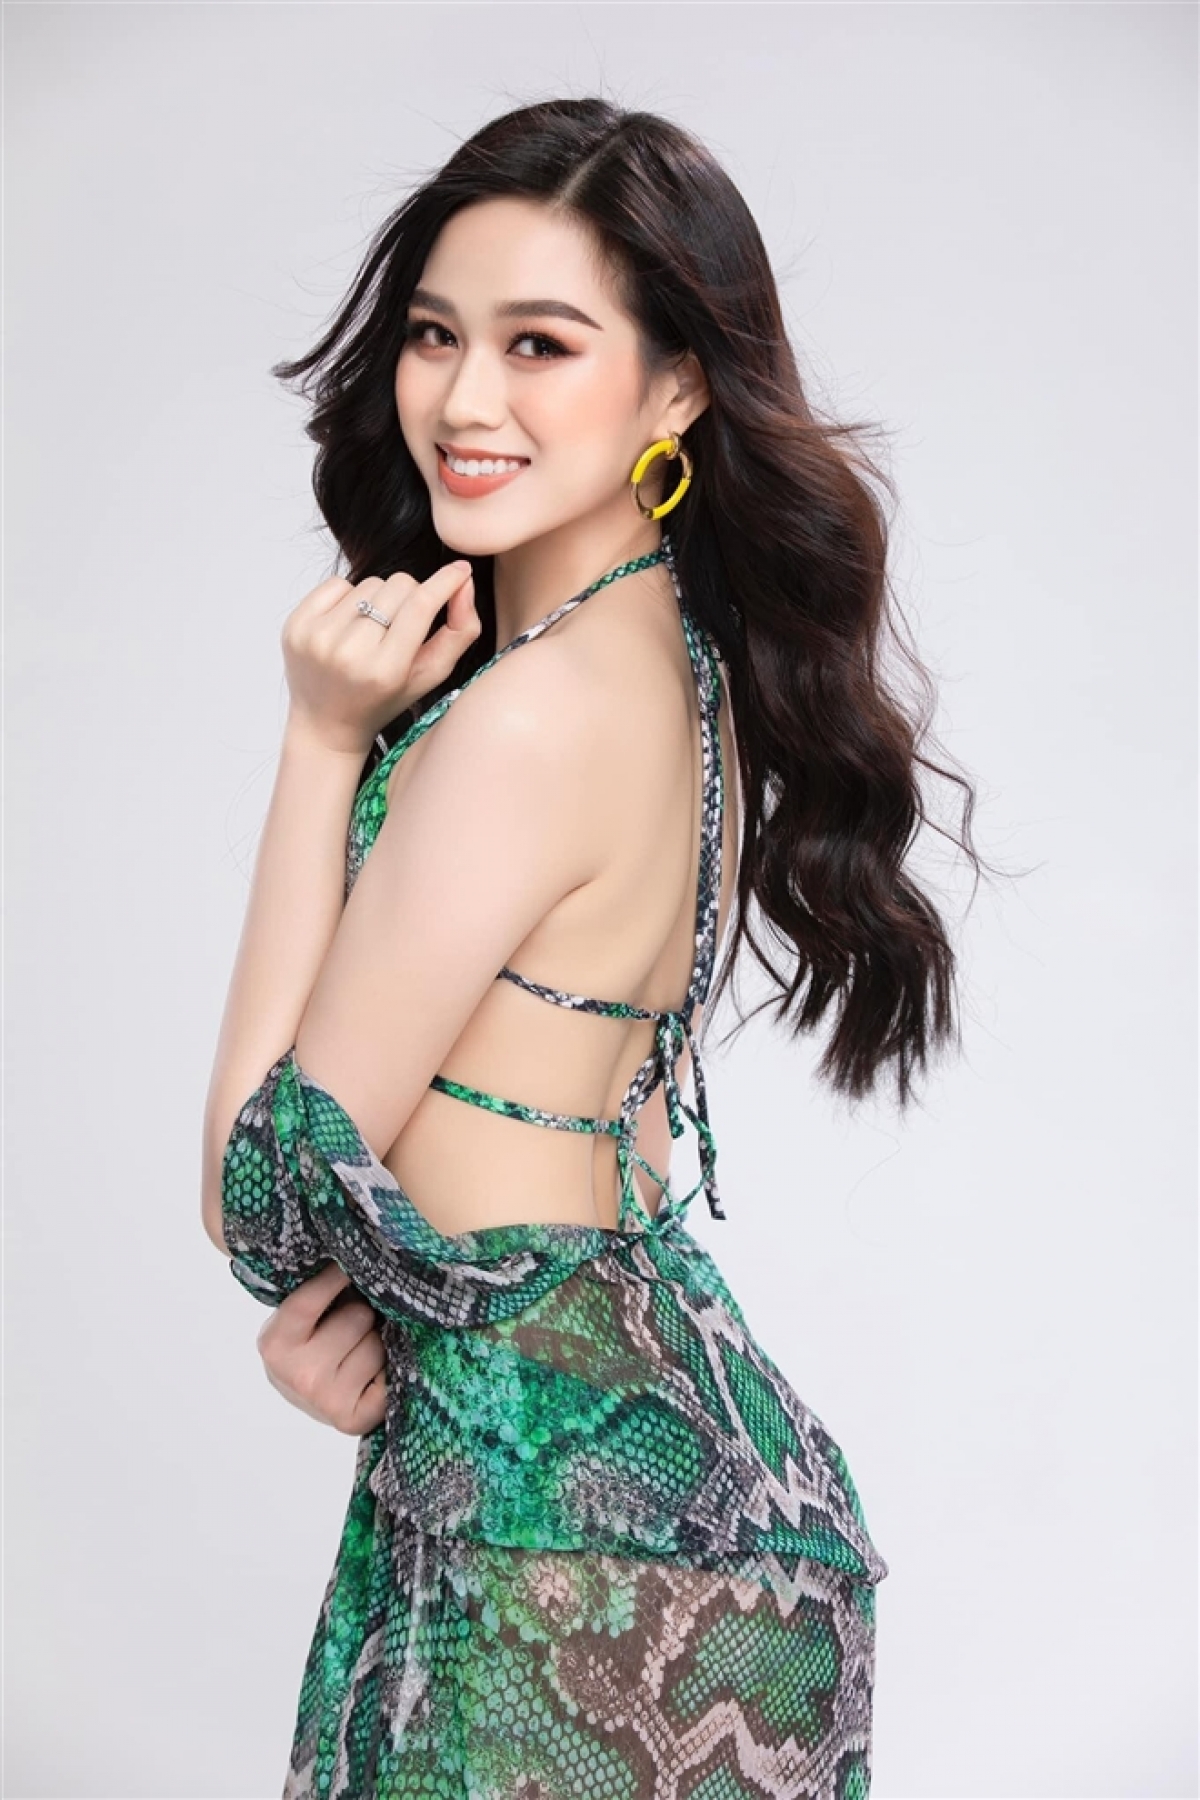 Hoa hậu Đỗ Thị Hà nóng bỏng trong bộ ảnh bikini họa tiết da rắn - Ảnh 4.